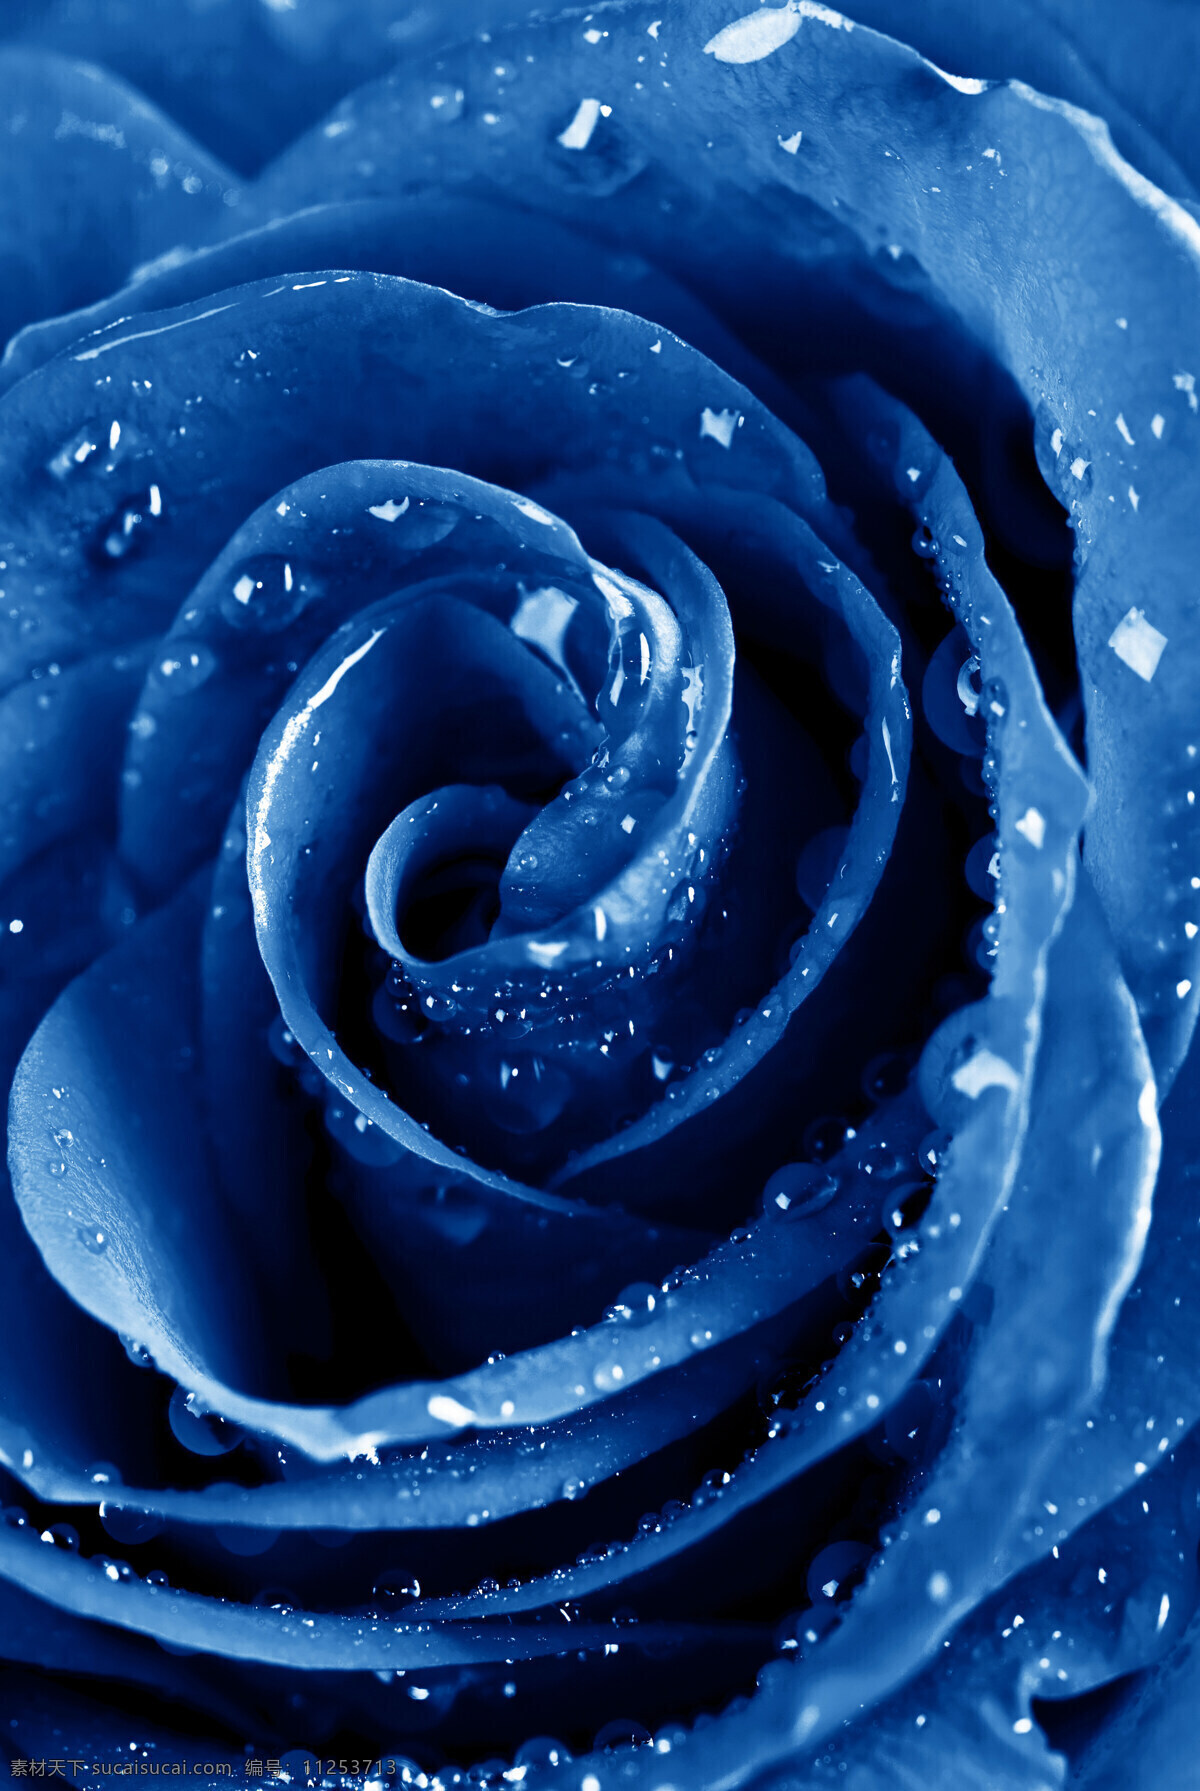 蓝玫瑰 玫瑰 鲜花 植物 水滴 水珠 露水 玫瑰特写 玫瑰花摄影 花草 生物世界